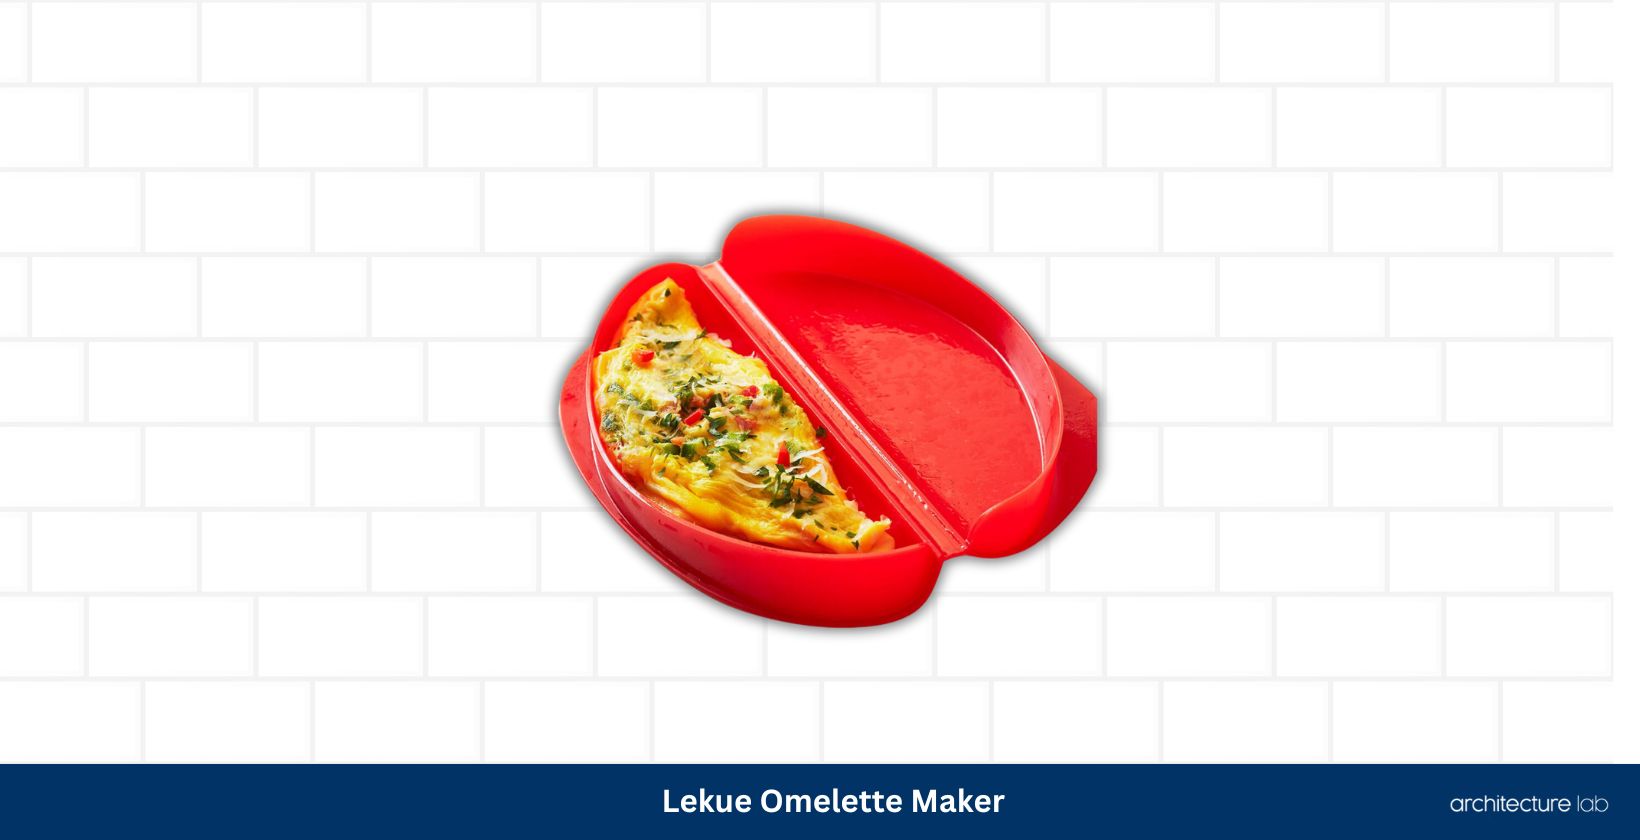 Lekue omelette maker